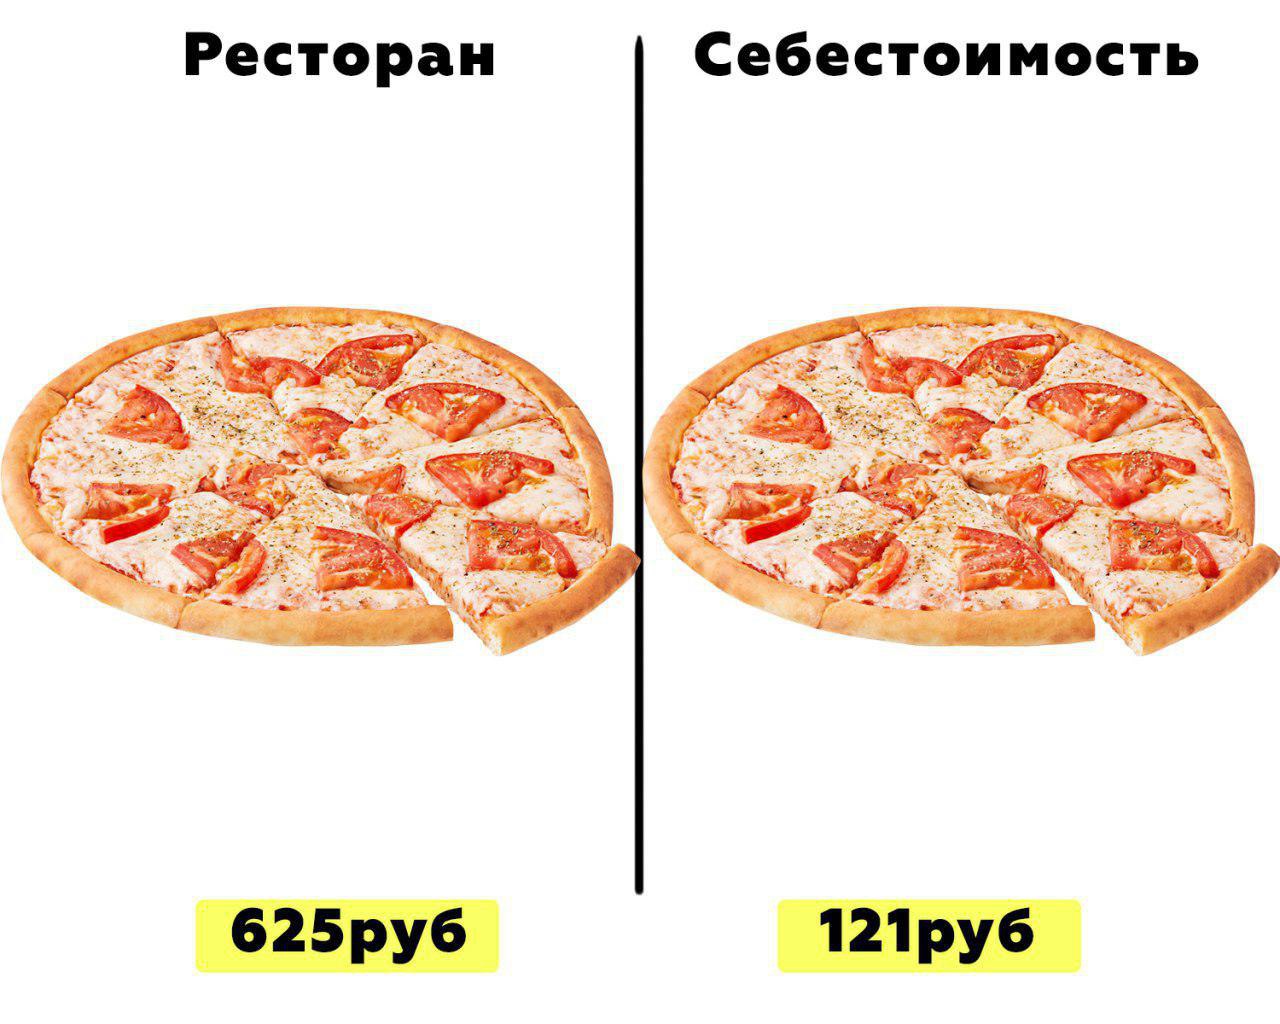 технологическая карта пицца четыре сыра фото 1